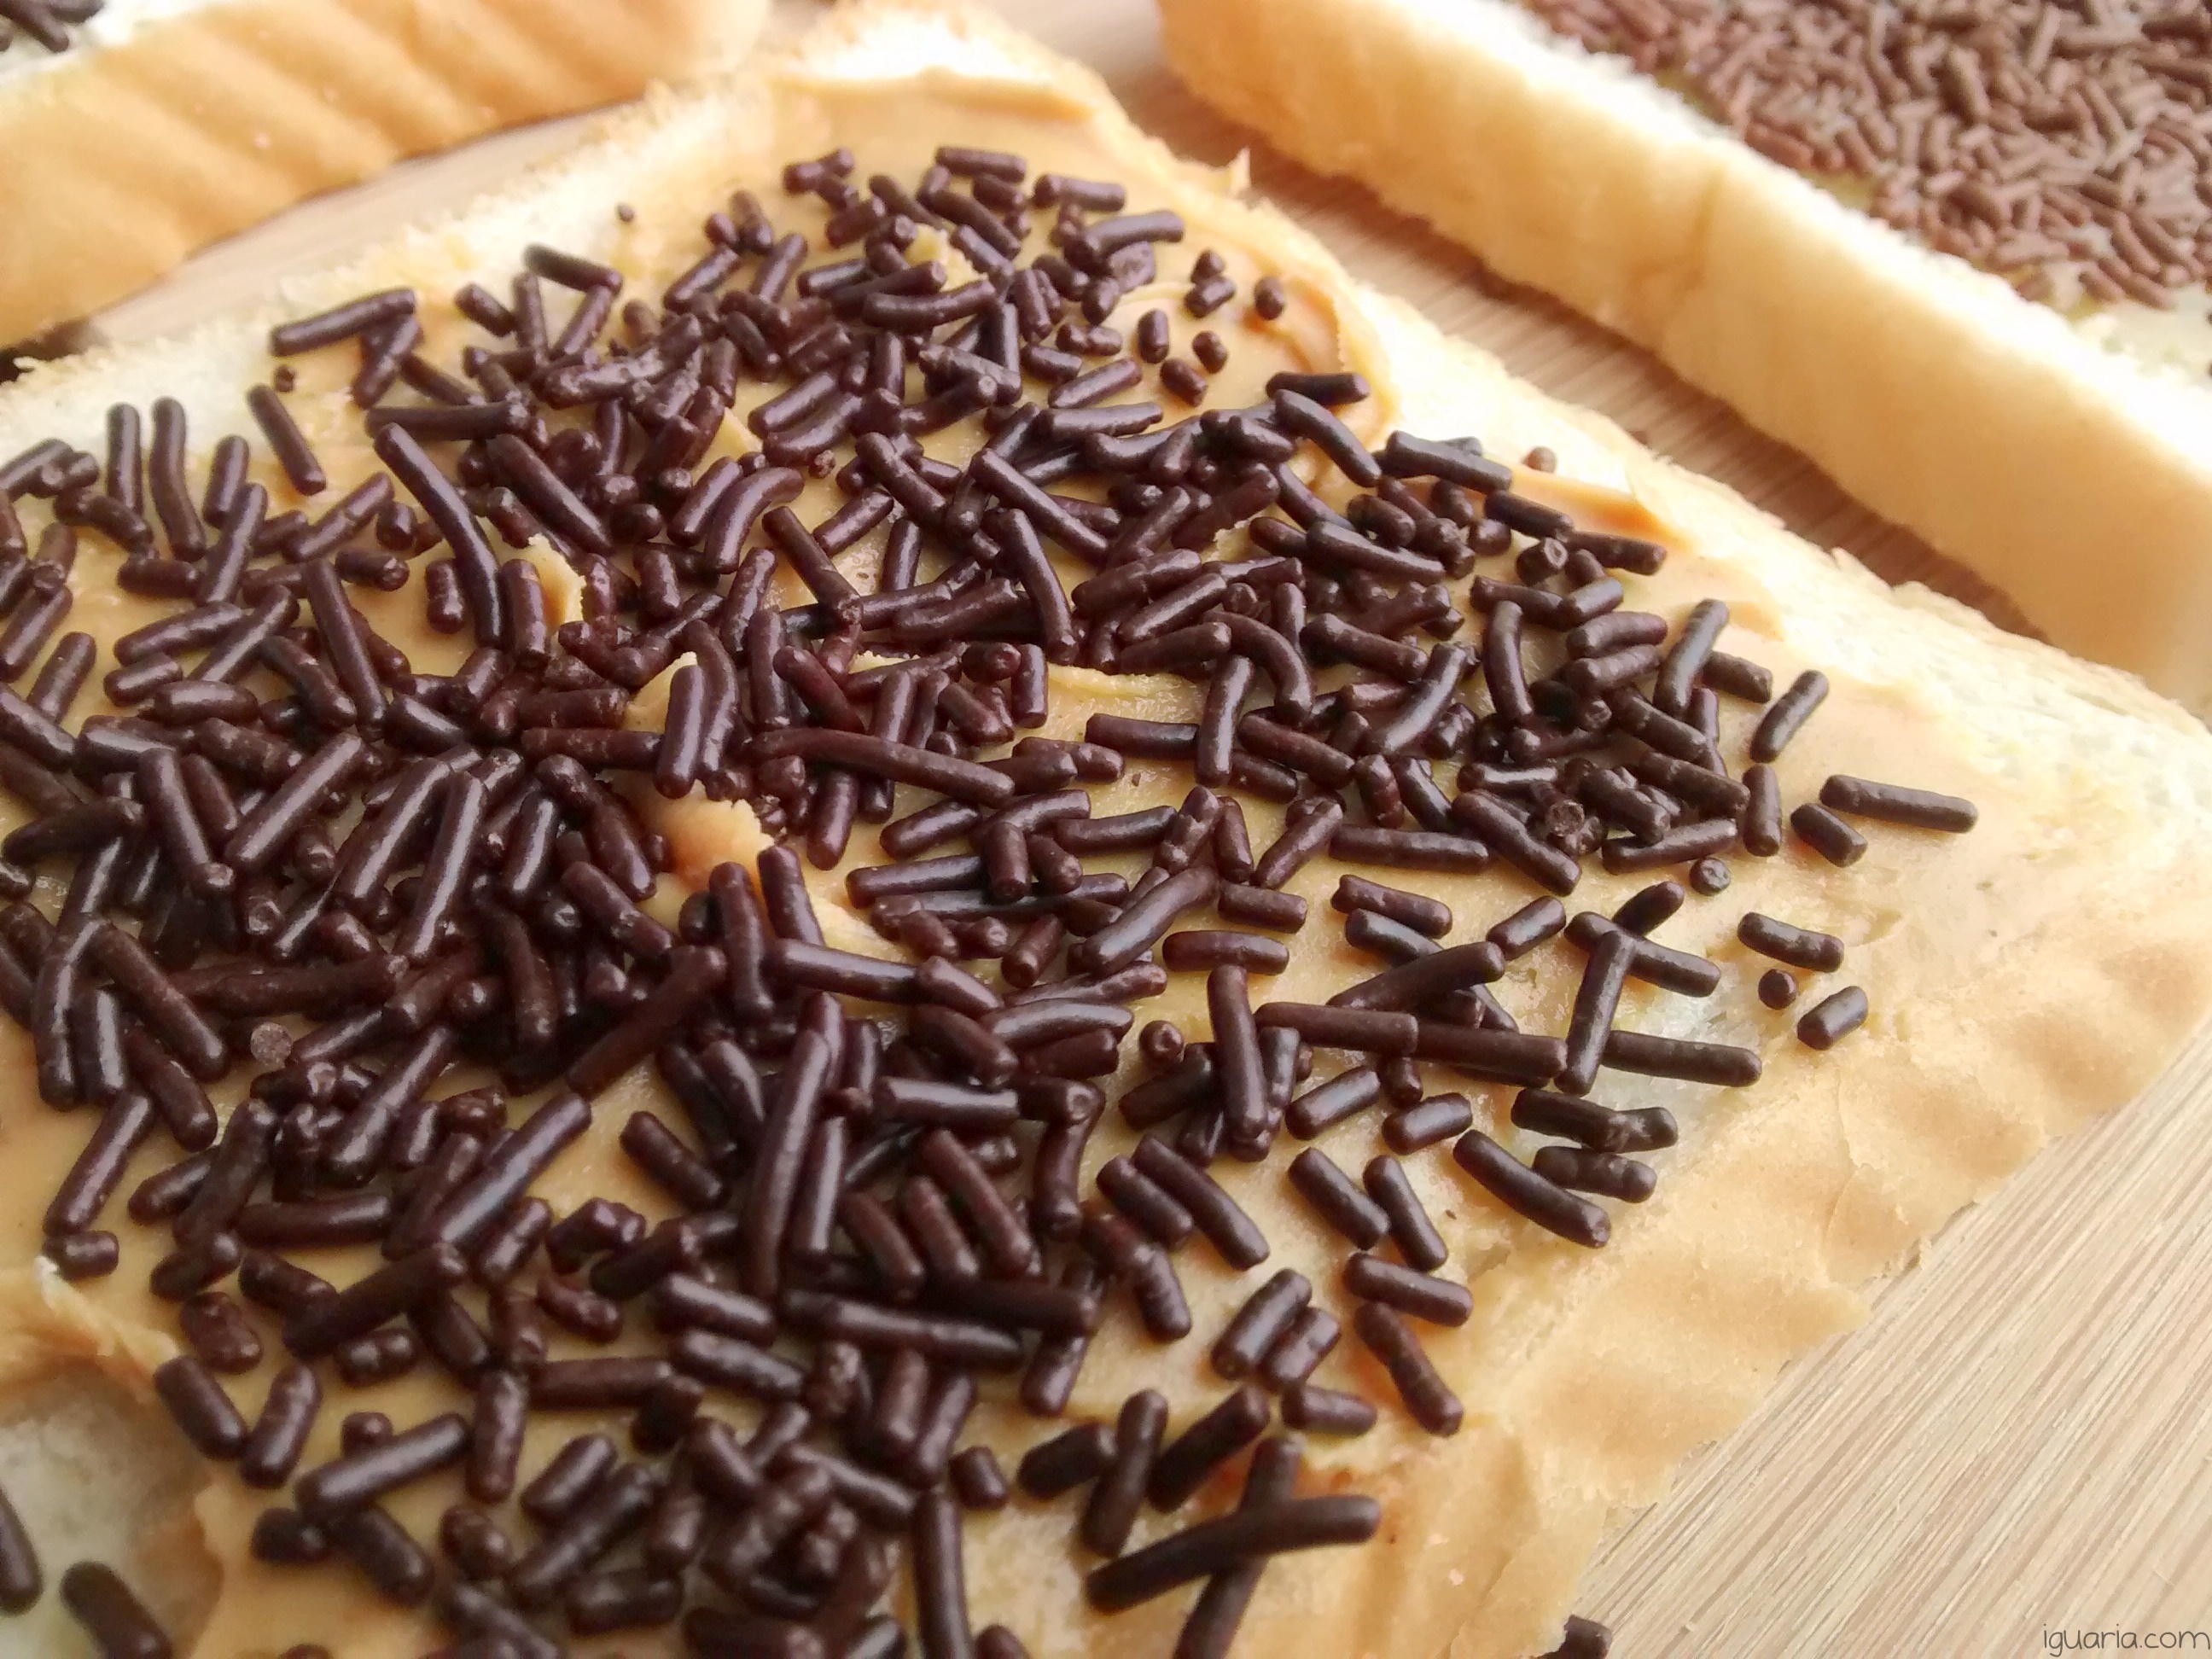 Iguaria_Pao-com-Manteiga-de-Amendoim-e-Granulado-Chocolate